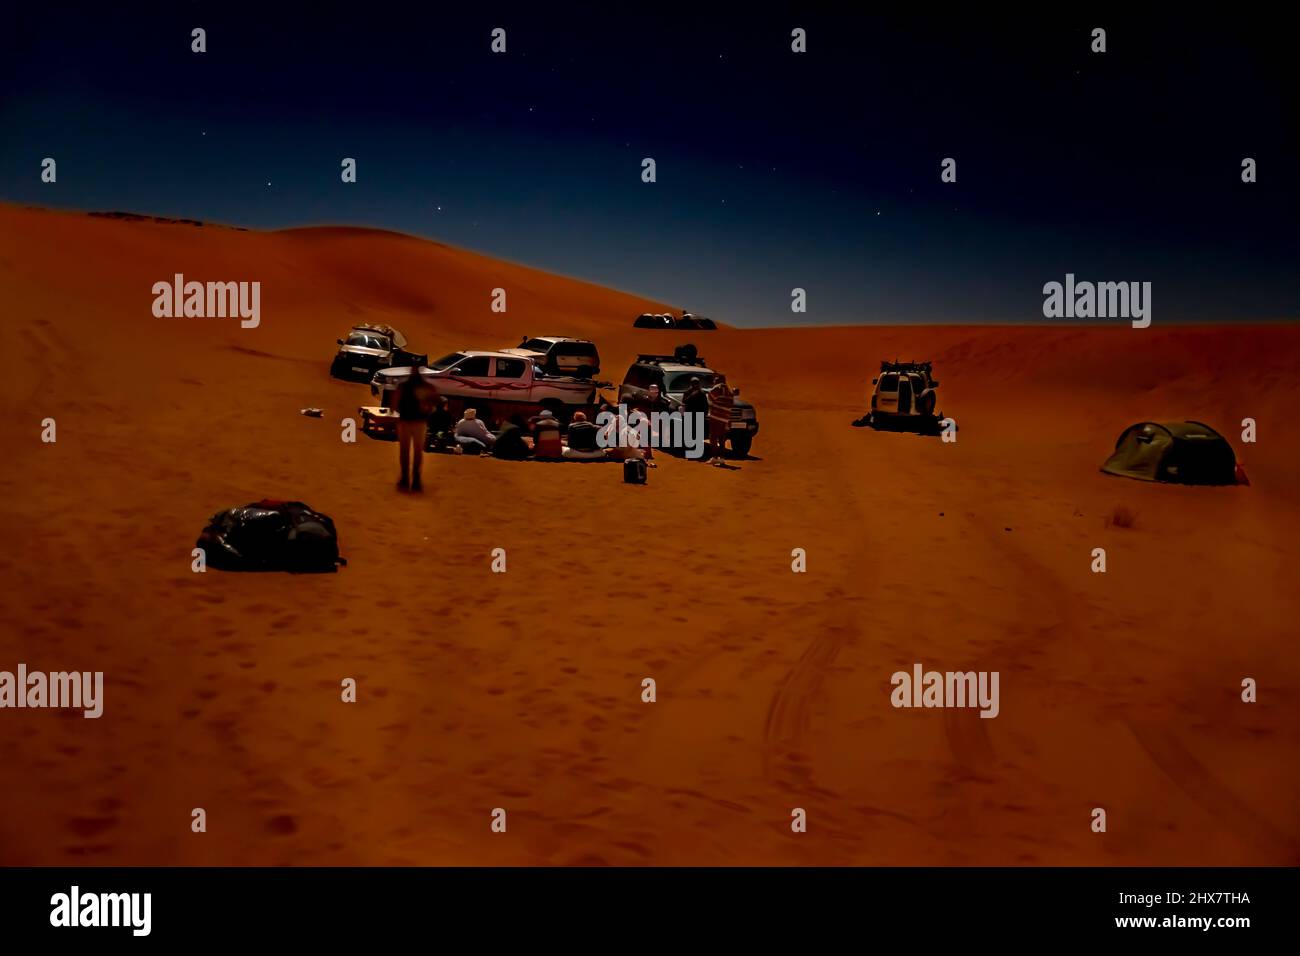 Groupe de touristes méconnaissable et camp de tuareg dans le désert du Sahara par nuit. VÉHICULES 4X4 garés, dunes de sable de couleur rouge, étoiles dans le ciel sombre. Banque D'Images